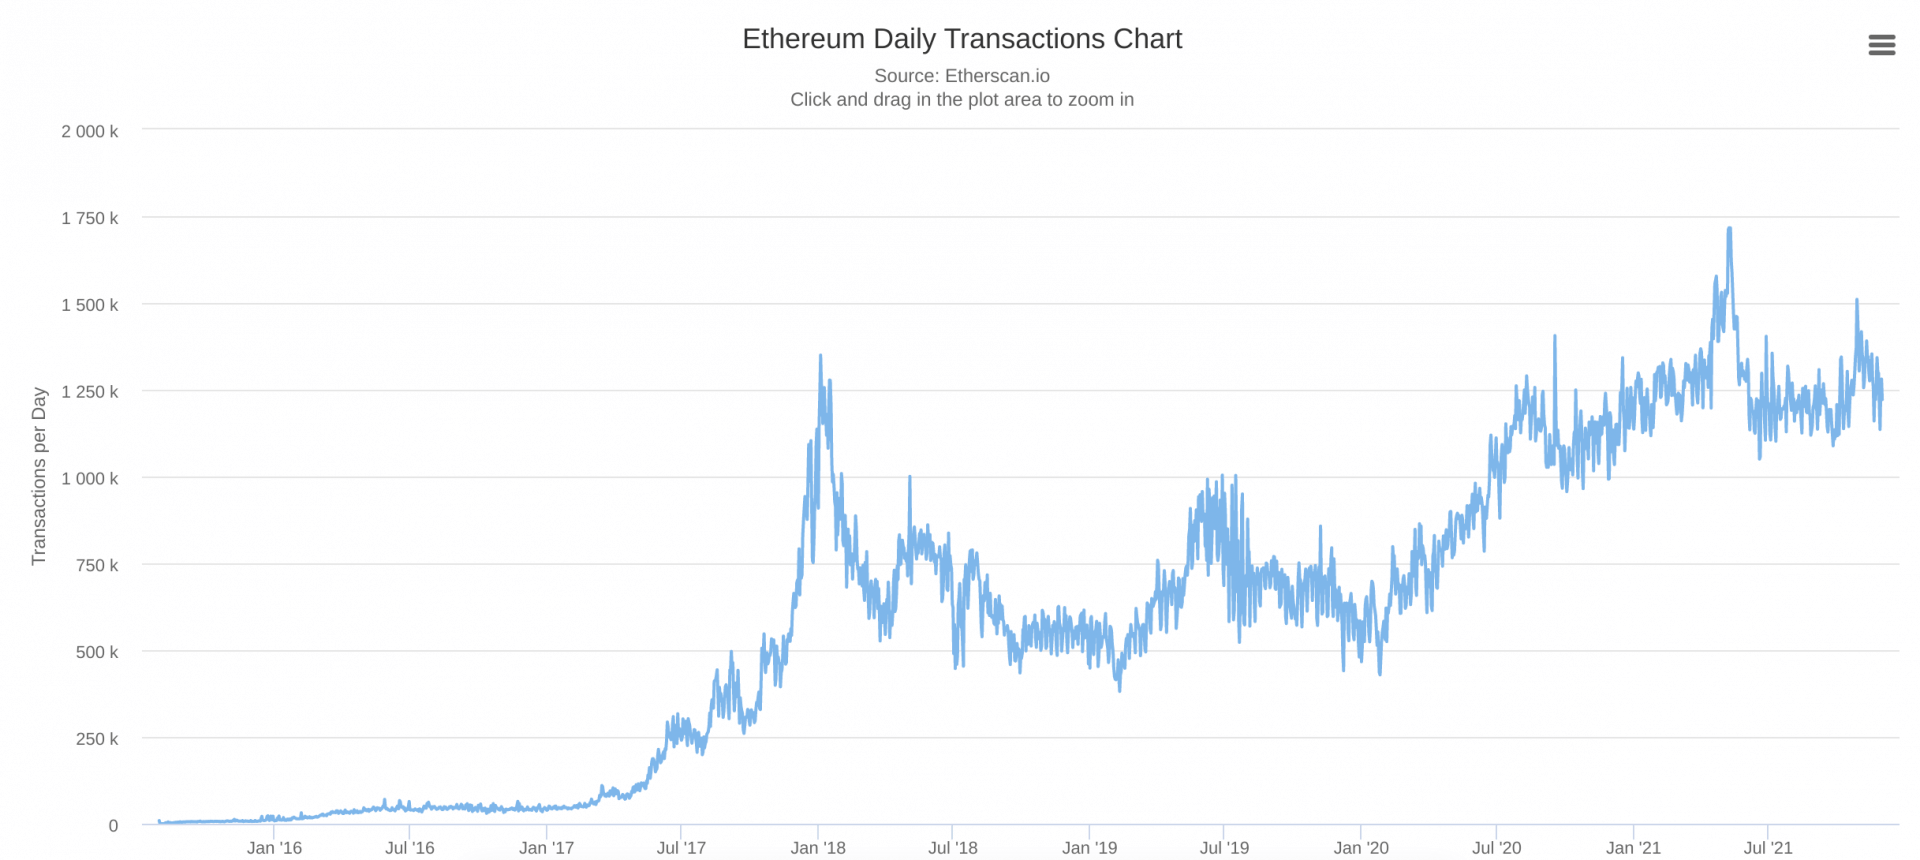 En l'espace de 2 ans, Ethereum a vu le nombre de transactions quotidiennes multiplié par 3, en passant d'environ 400 000 transactions par jour en janvier 2020 à plus de 1,2 million.